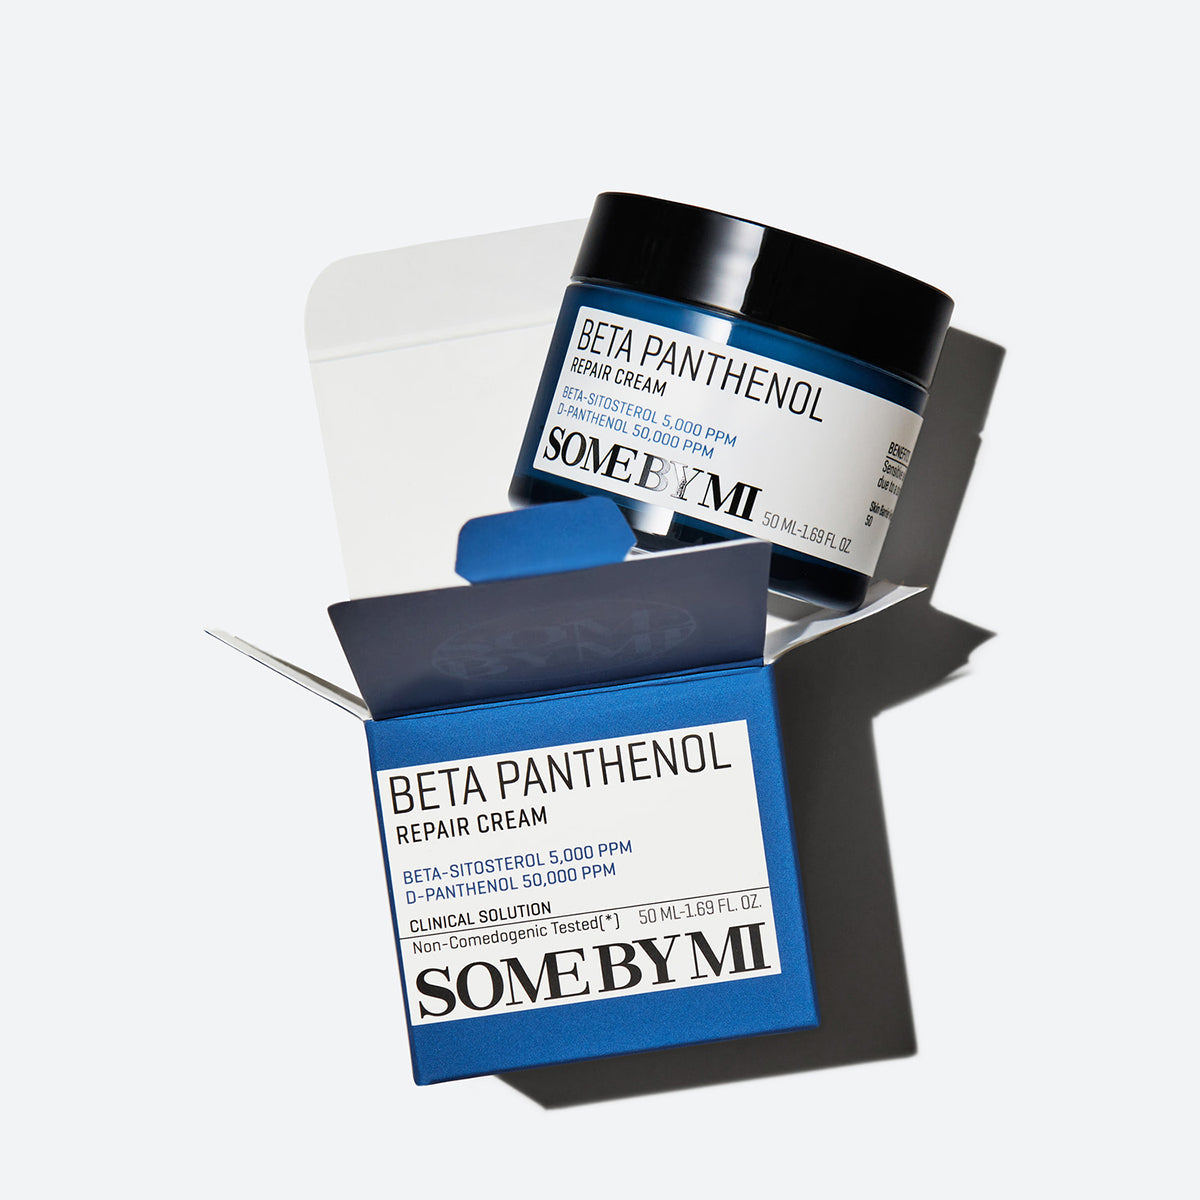 Beta Panthenol Repair Cream